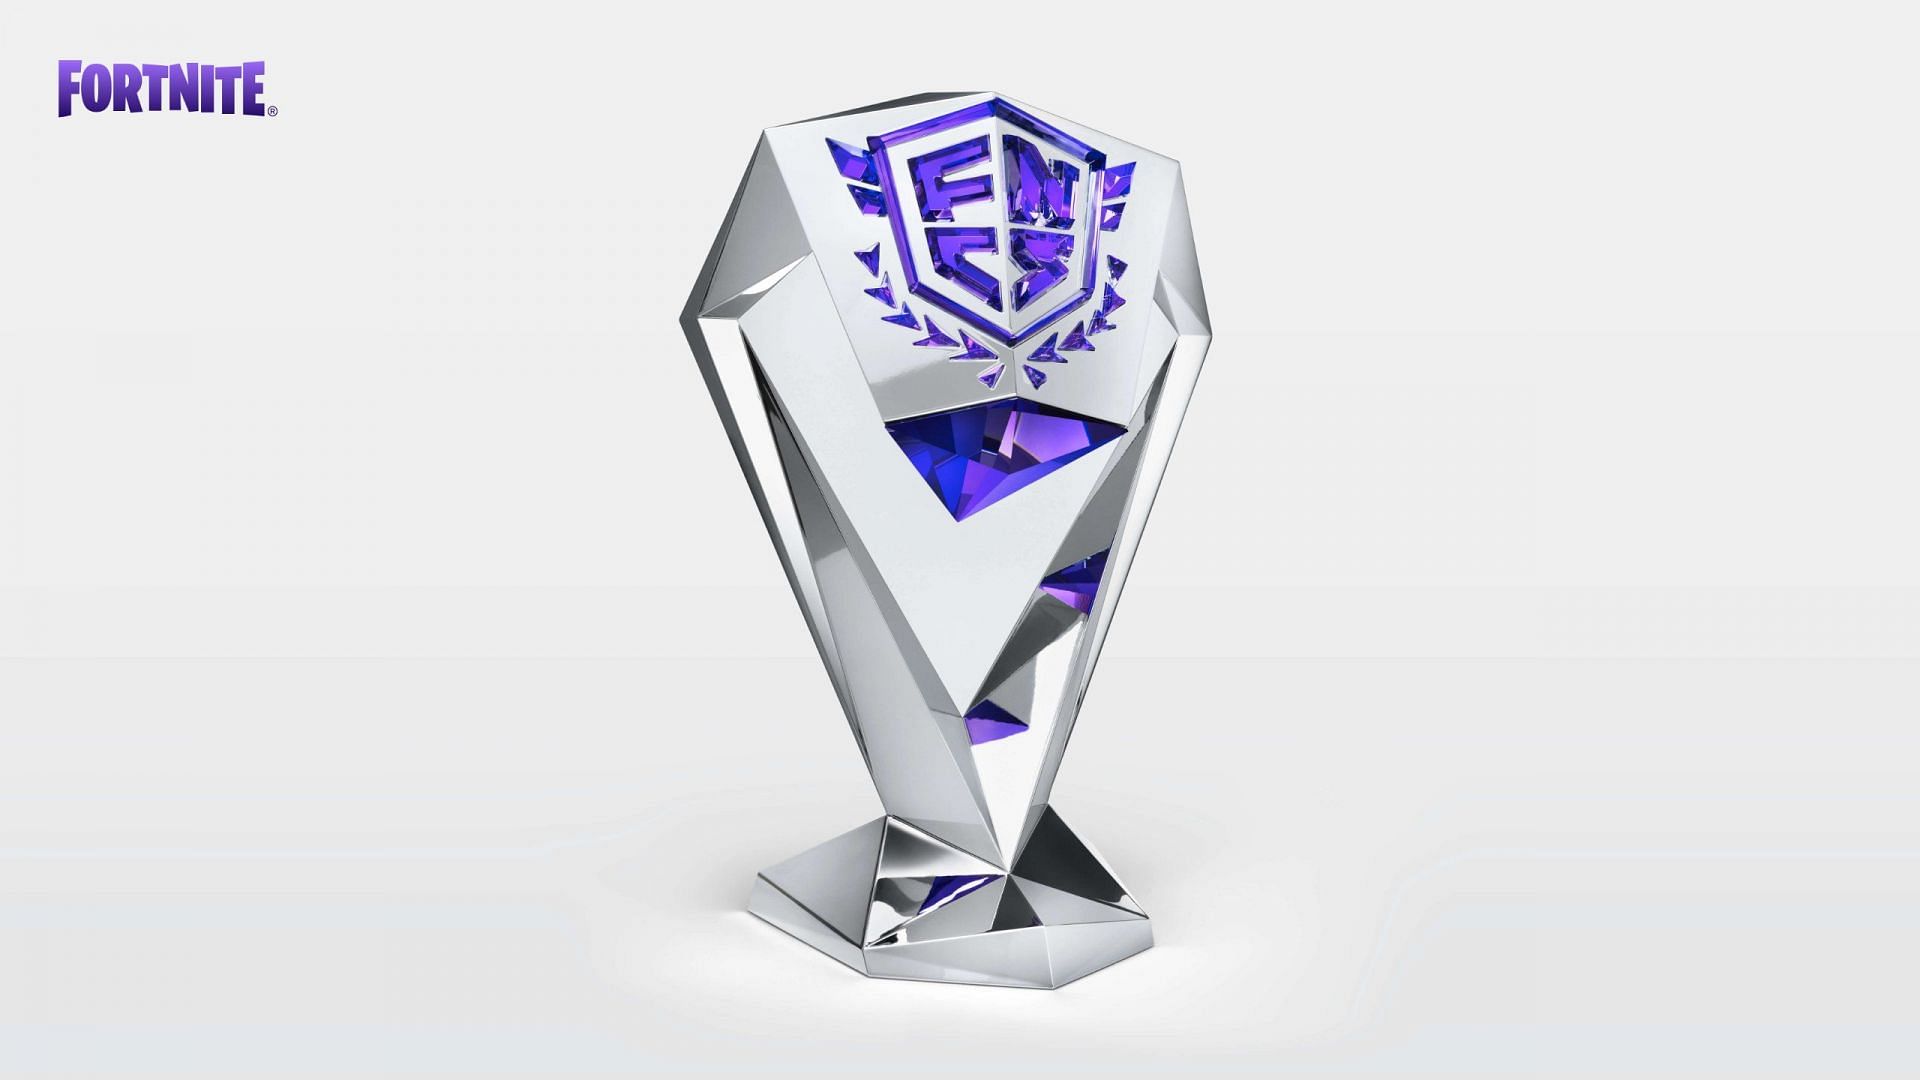 Fortnite reveals Crystal Swarovski trophy for FNCS 2022 winner